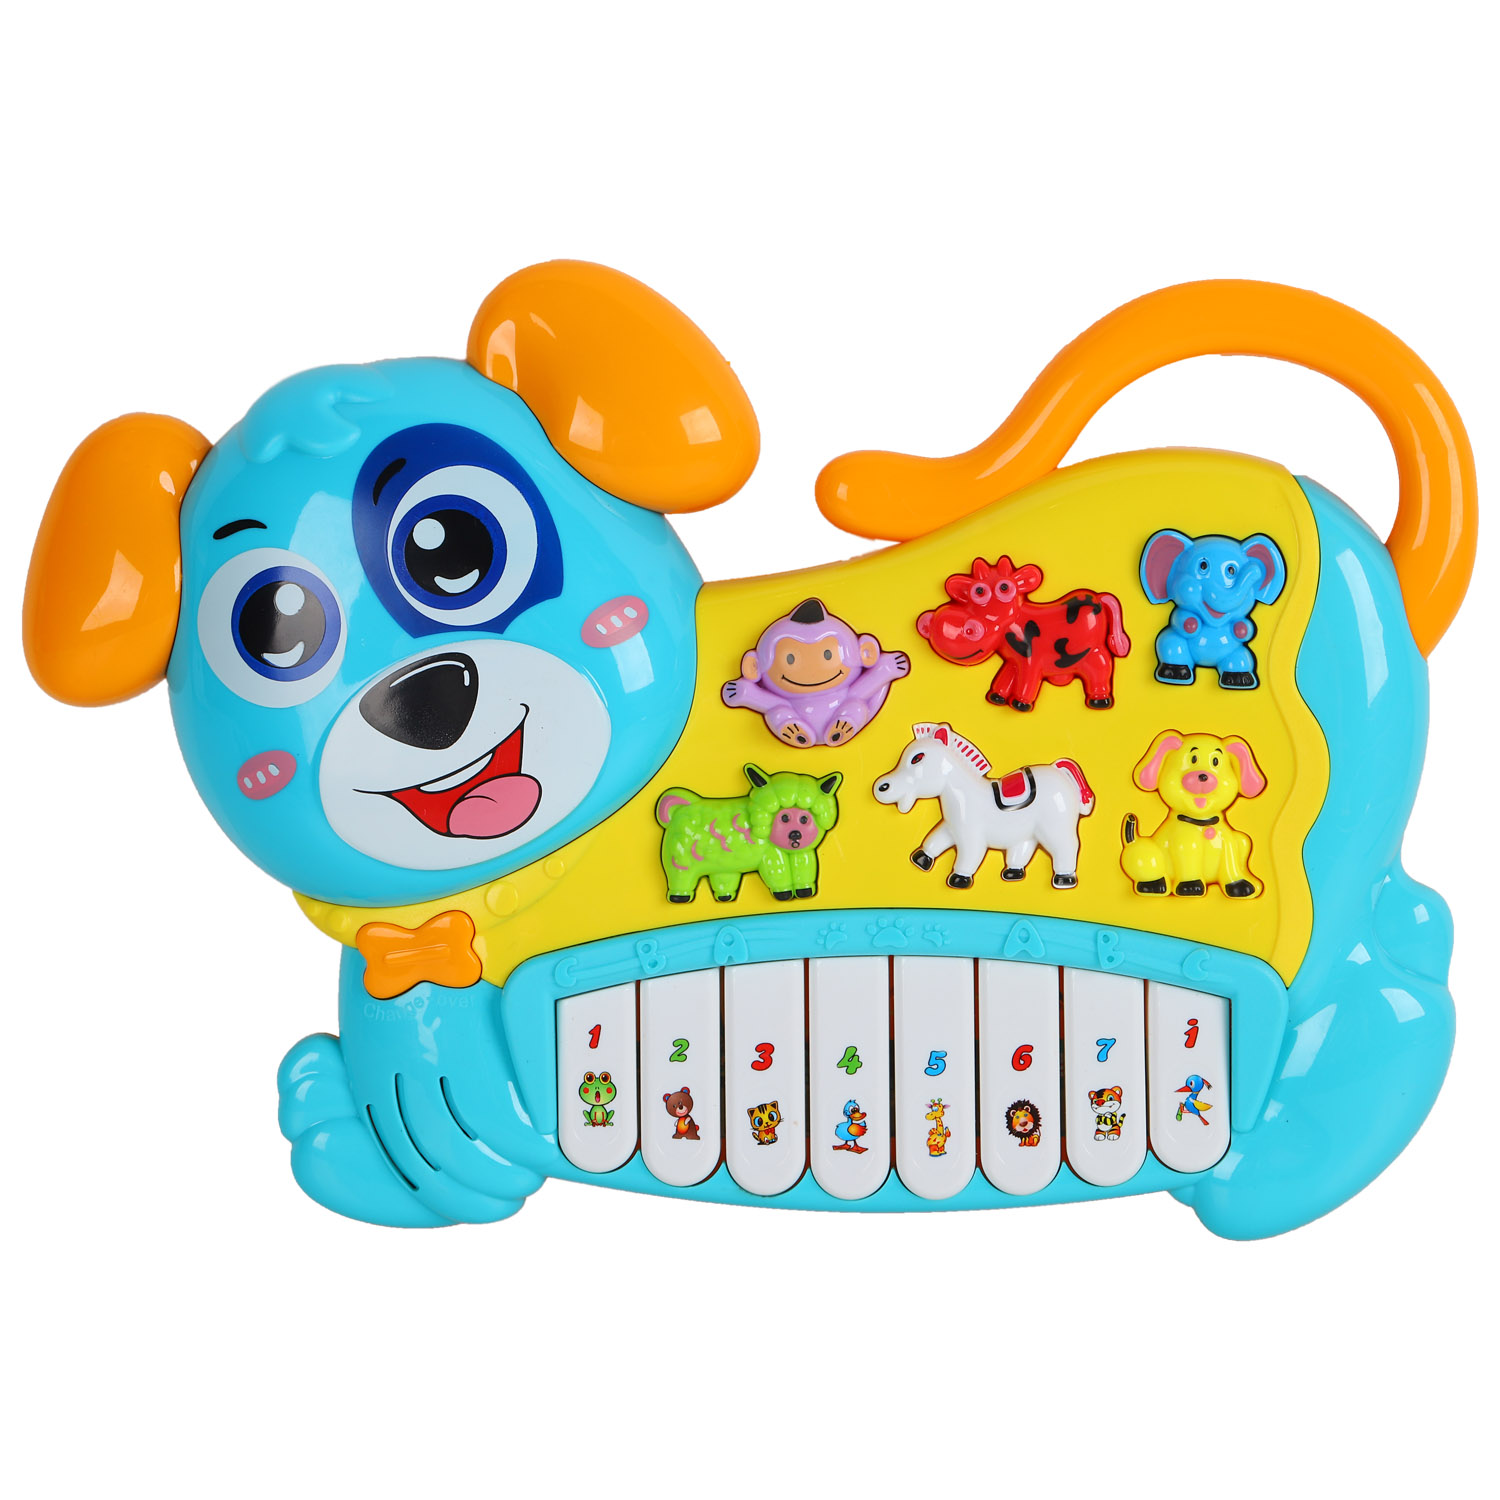 фото Пианино обучающее тм smart baby собака цвет голубой, 42 звука, мелодии, стихи jb0333400